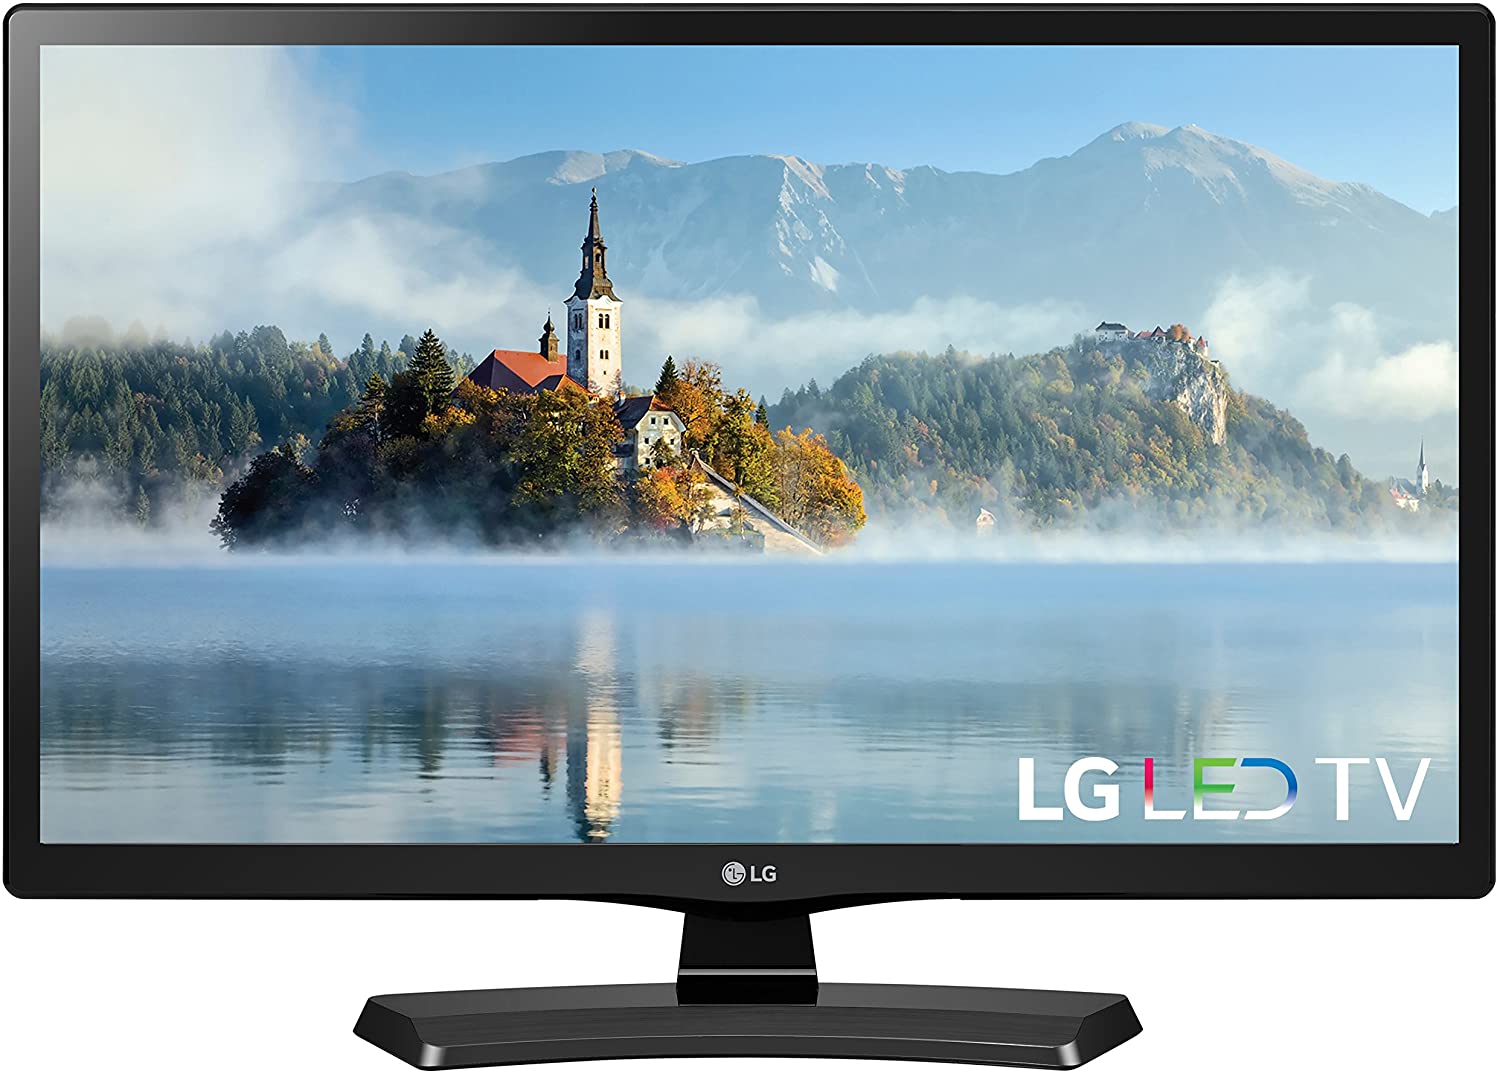 LG 22LJ4540 Energy Efficient Backlit Television, 22-Inch